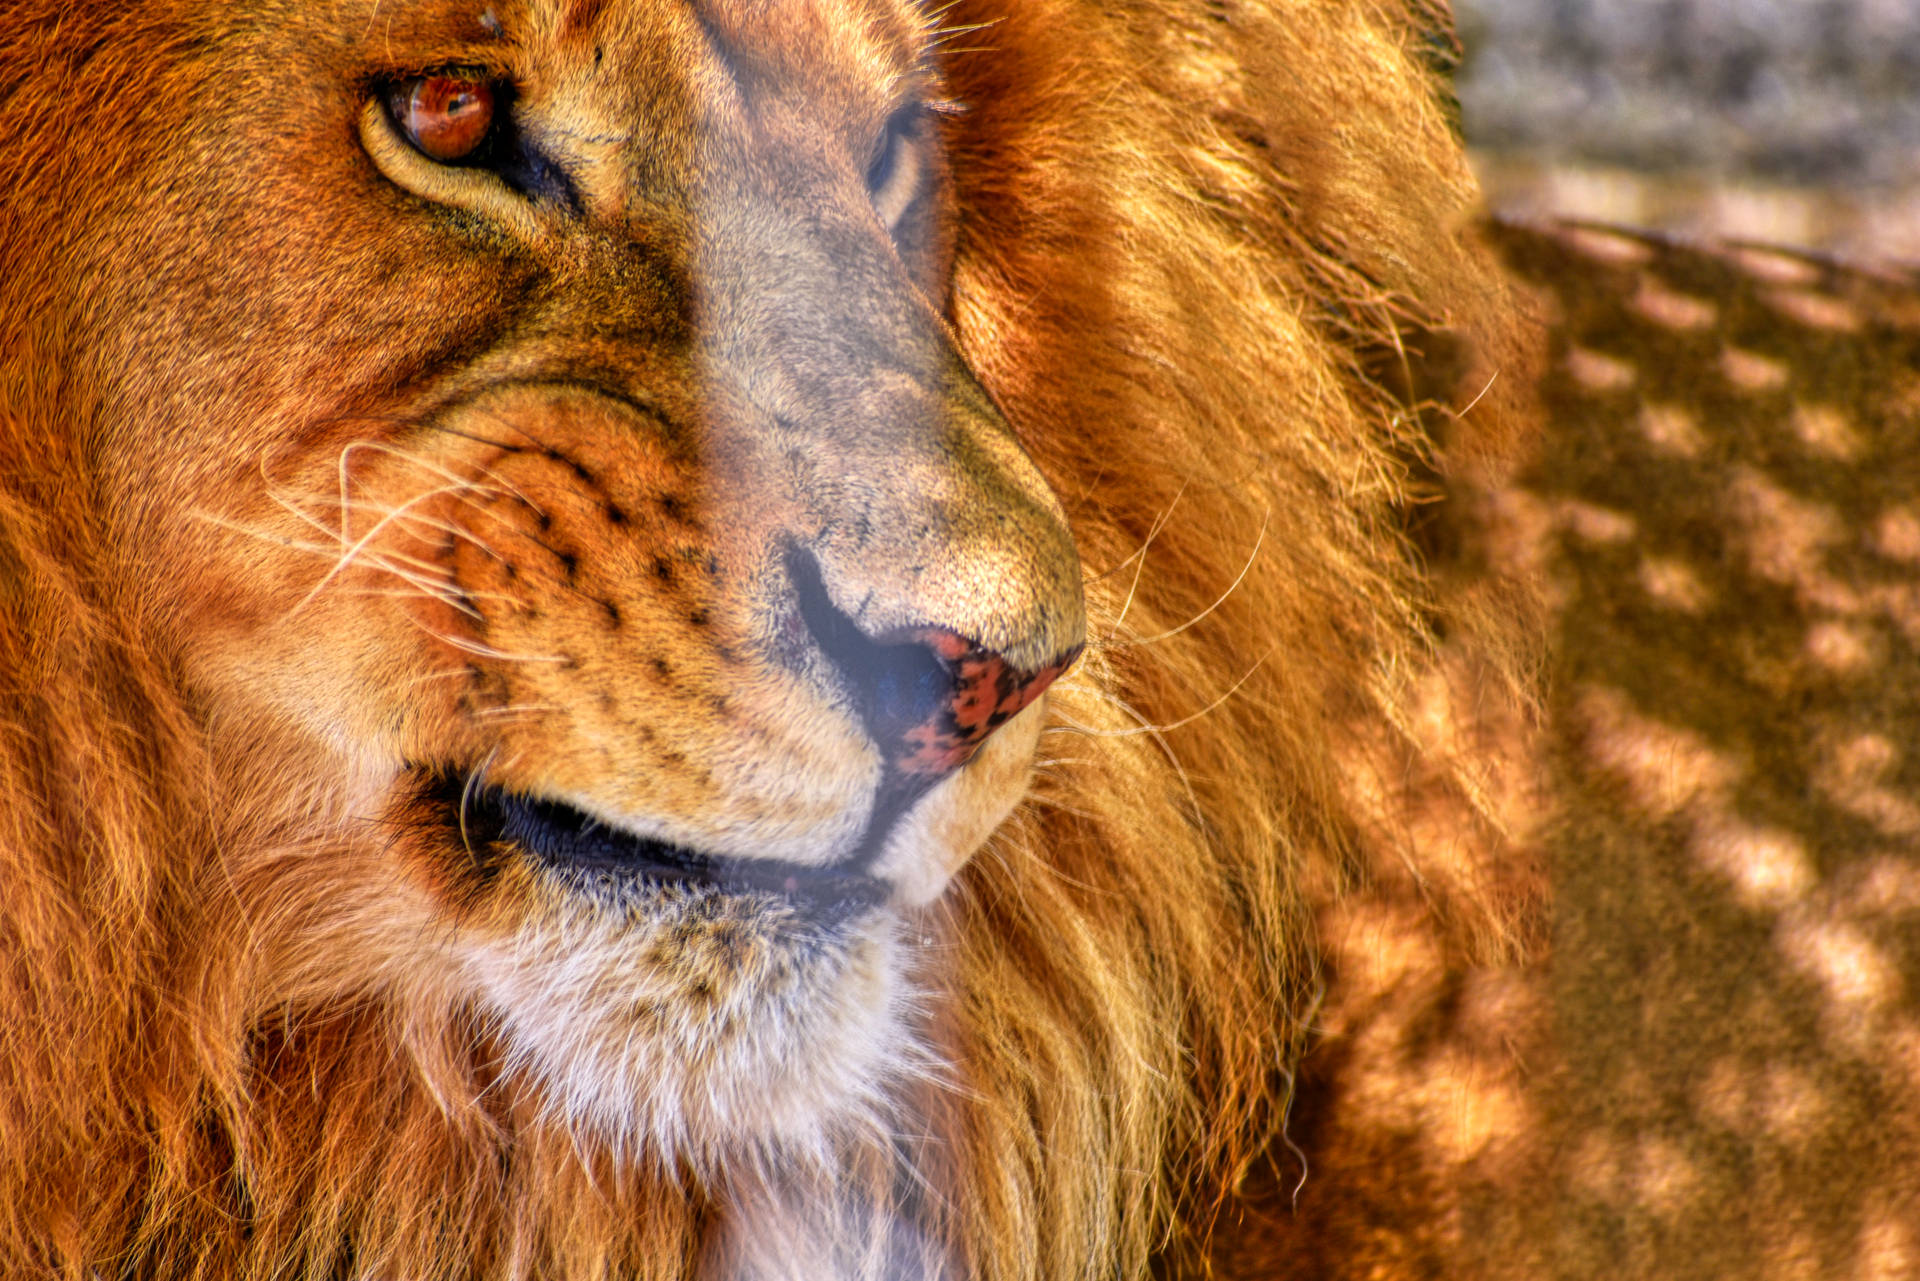 Vred løve der kigger væk ved siden af dens manke. Wallpaper